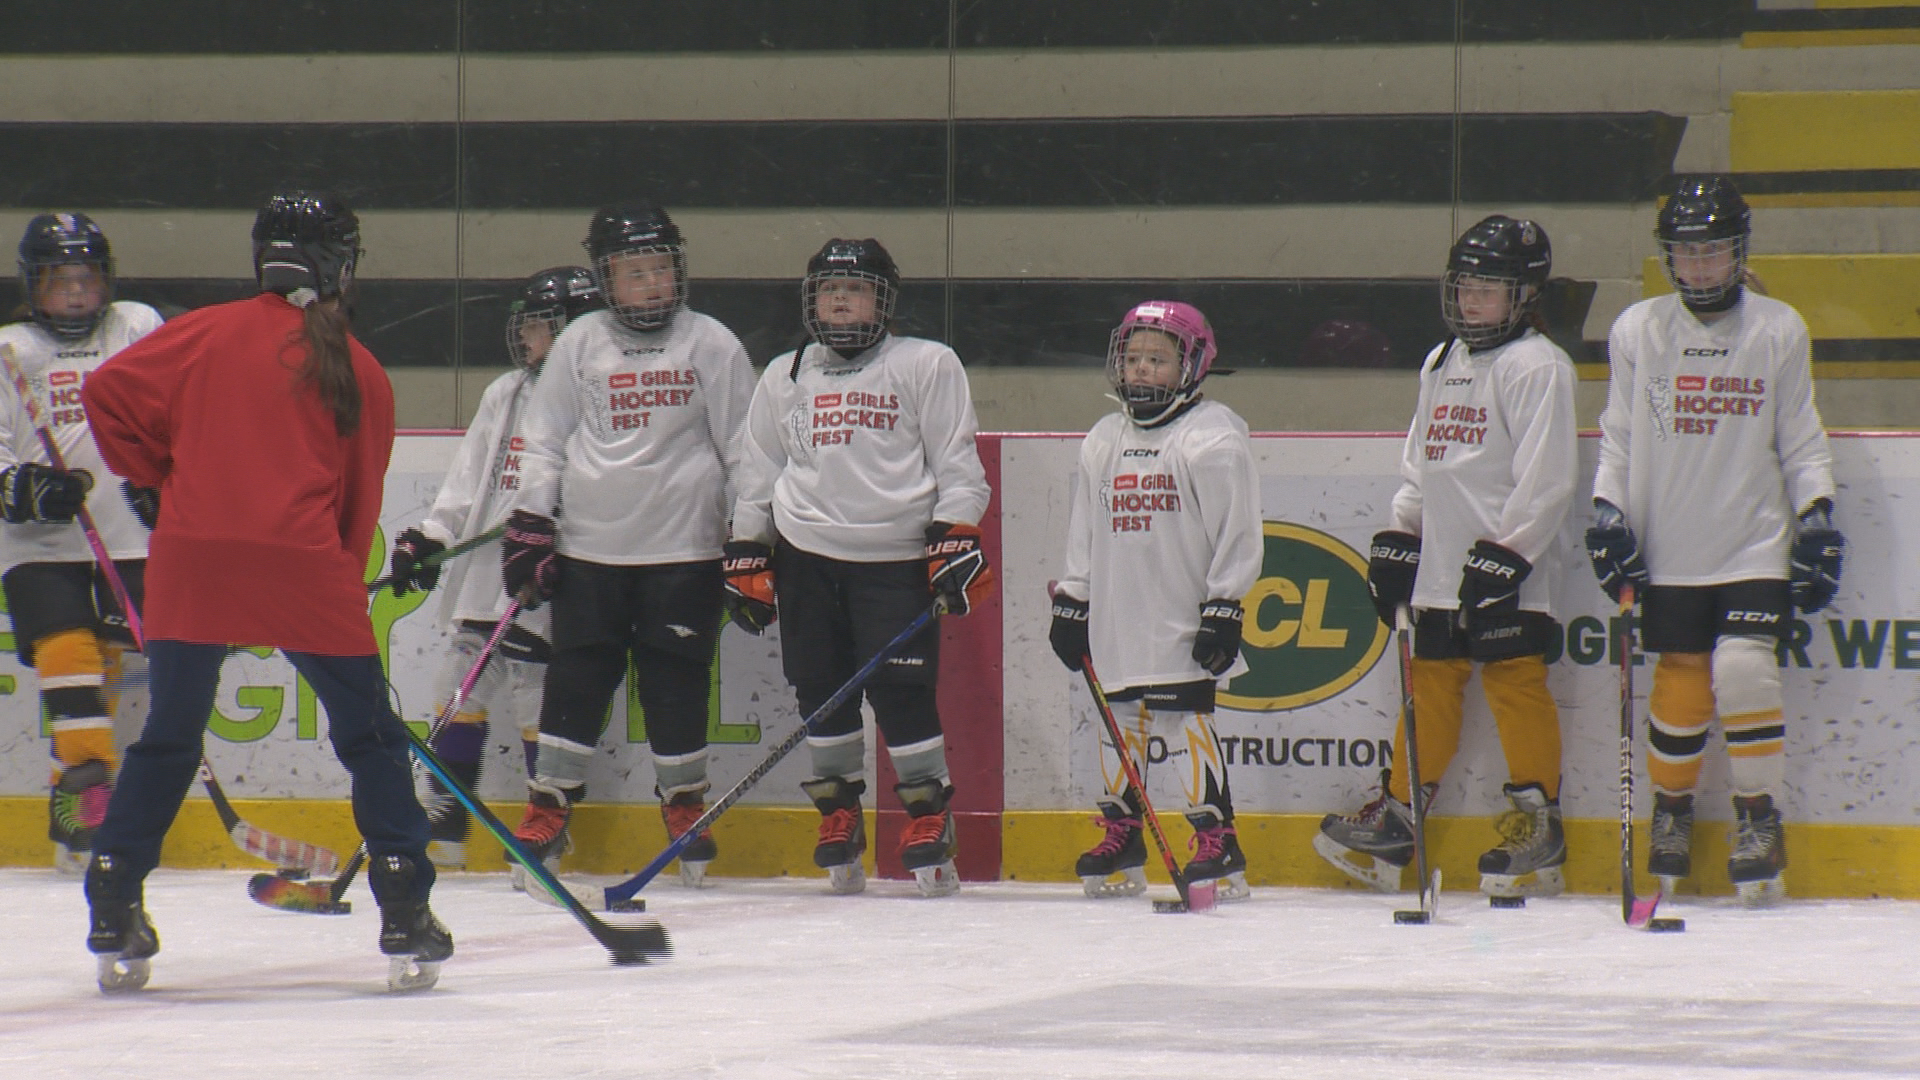 Girls HockeyFest се завърна в Уинипег в неделя, организиран от